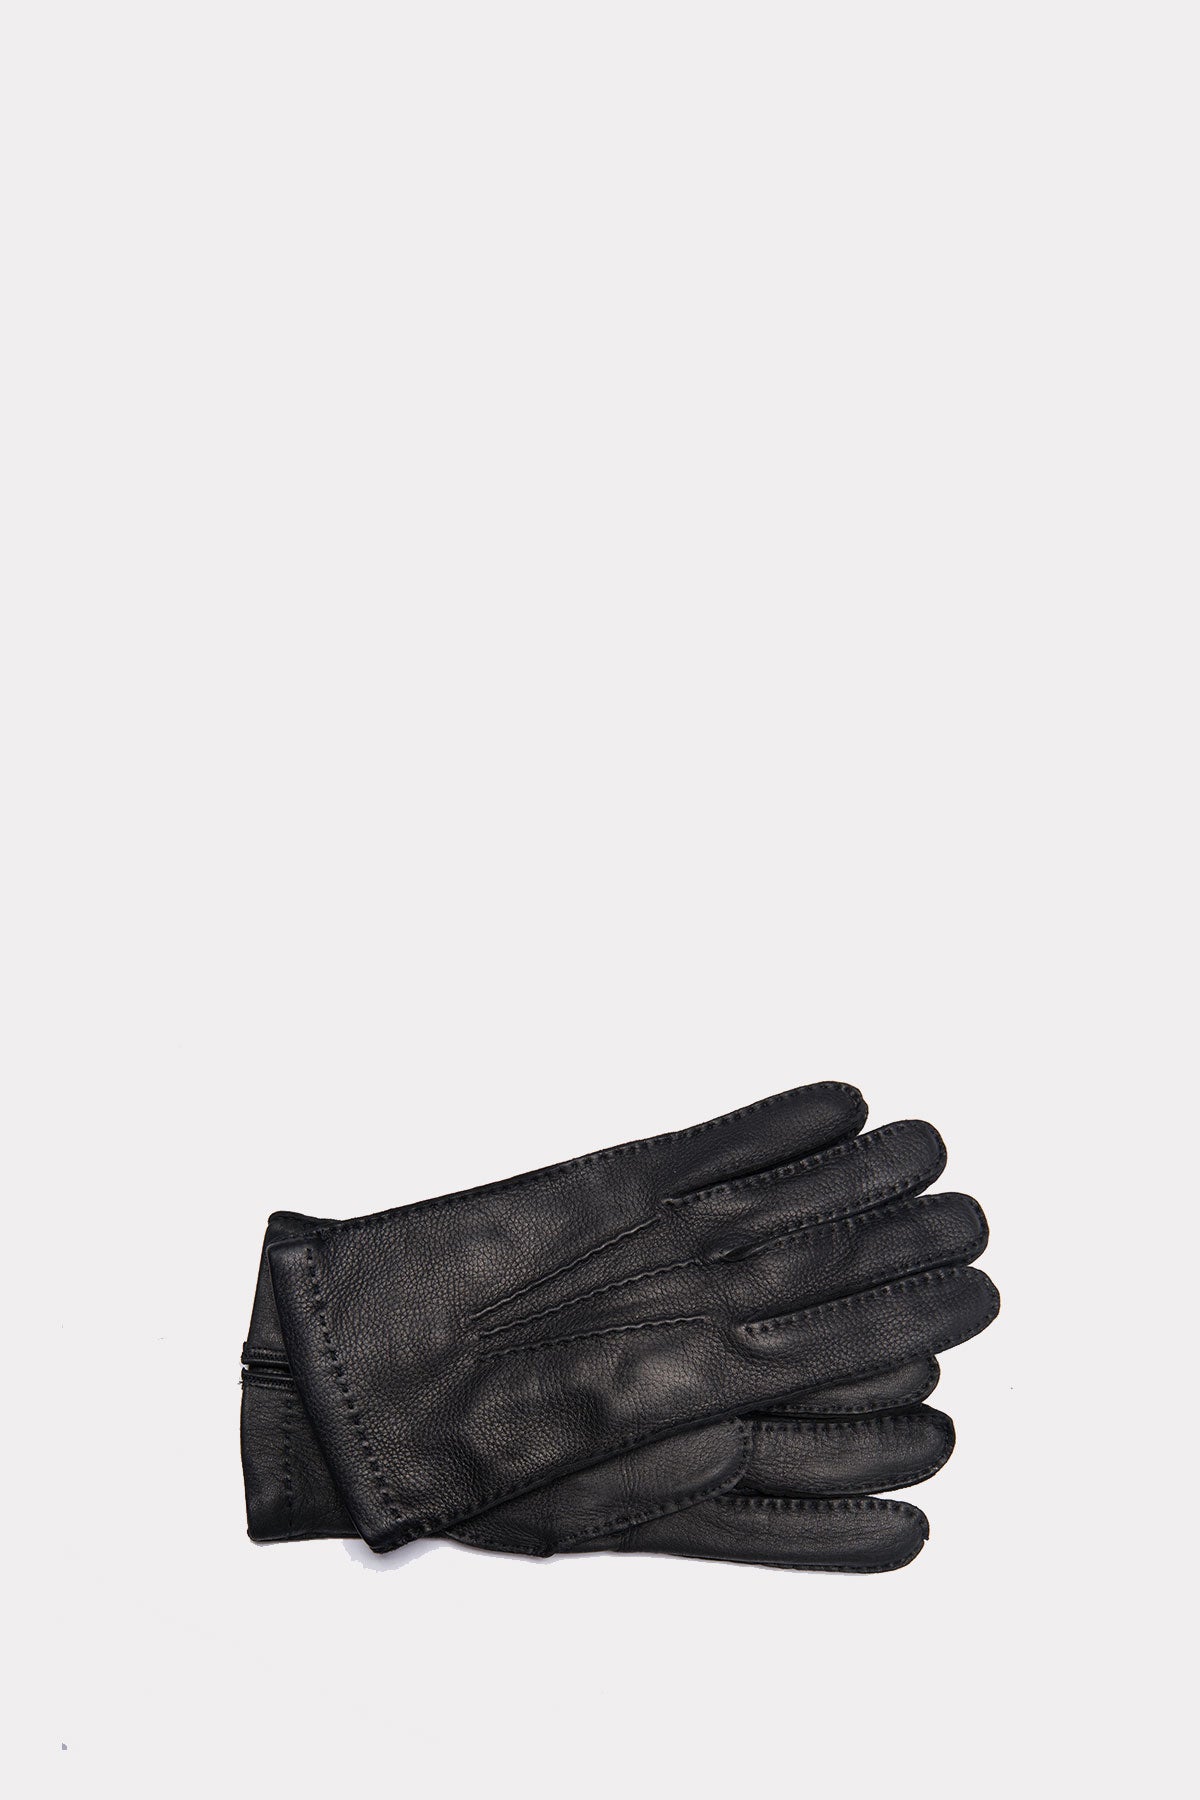 Hirschleder Handschuhe in schwarz